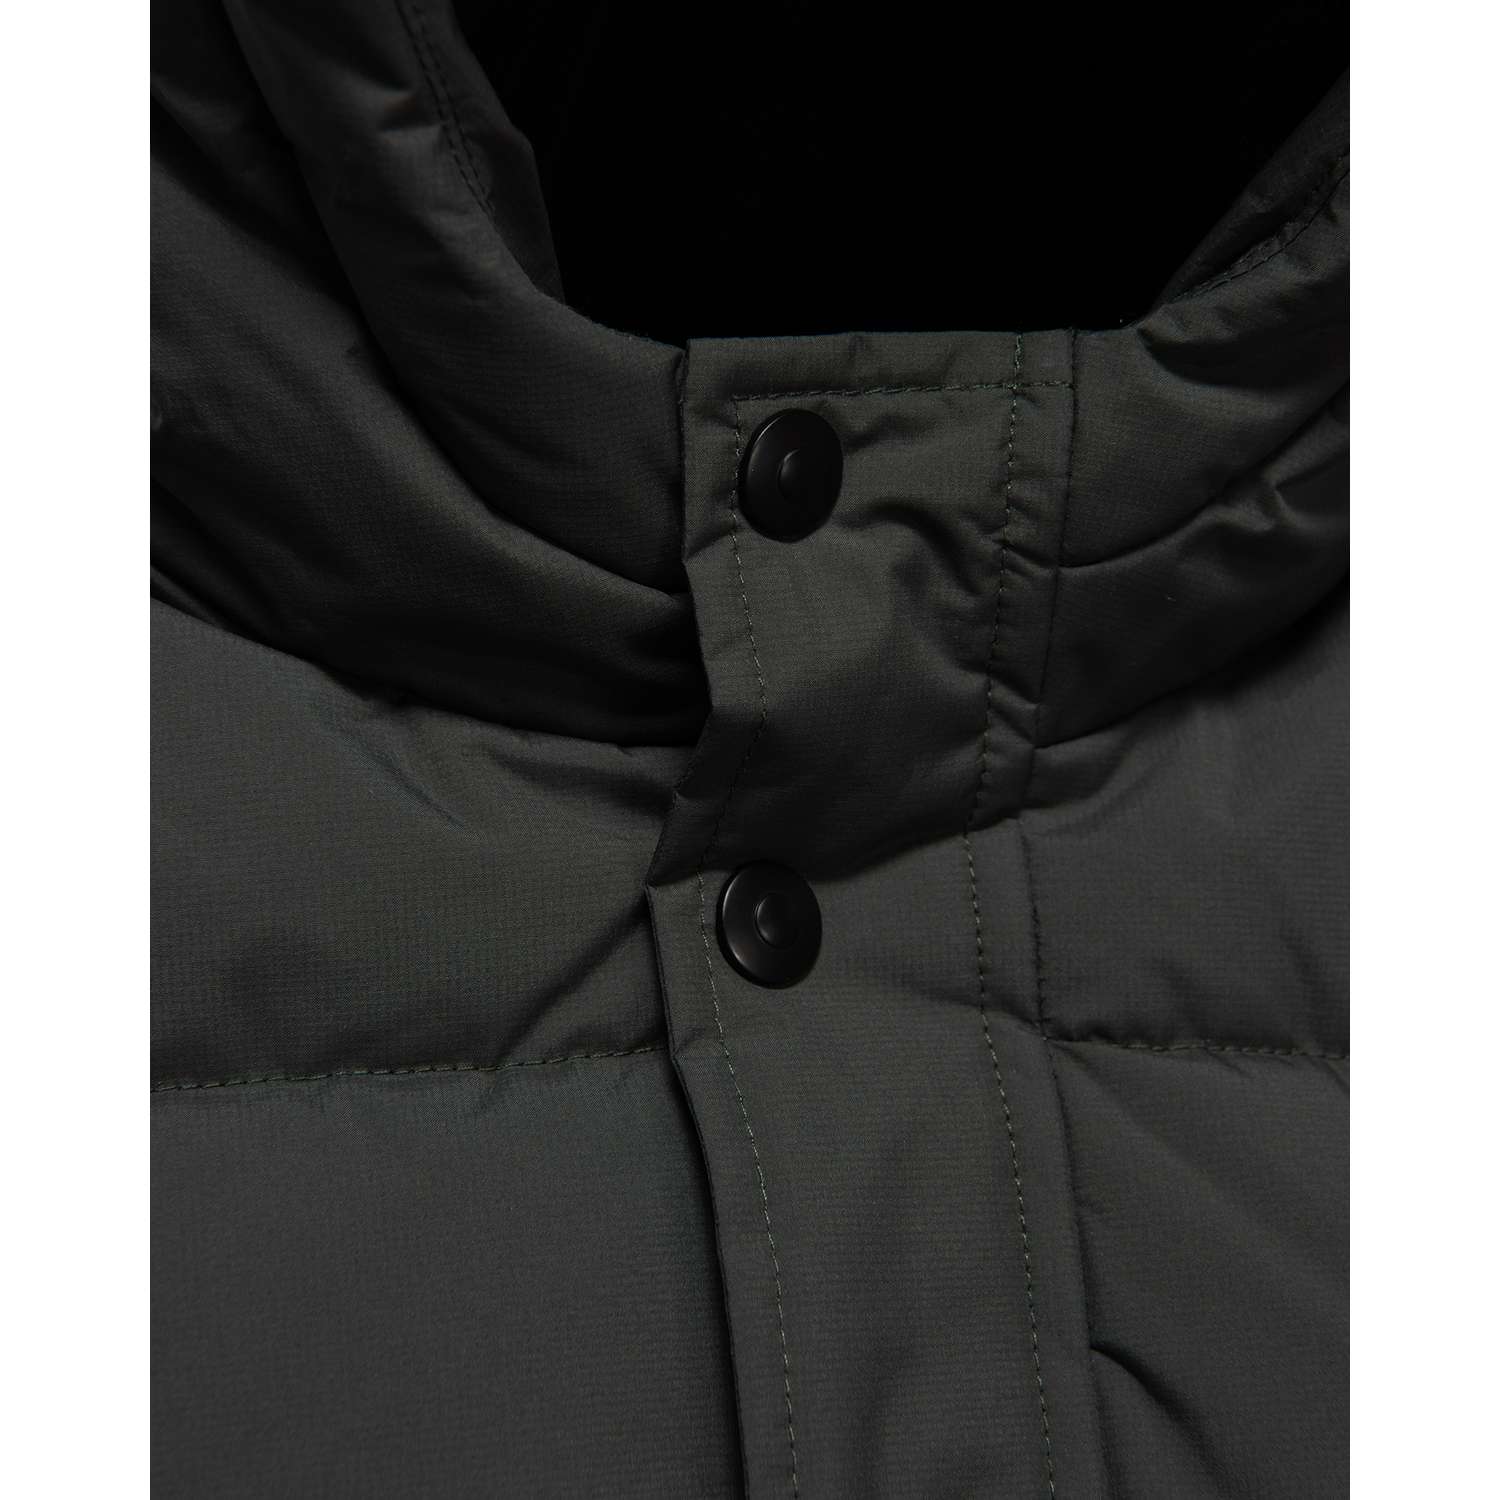 Куртка Futurino Cool W23FC5-E2kb-24 - фото 5